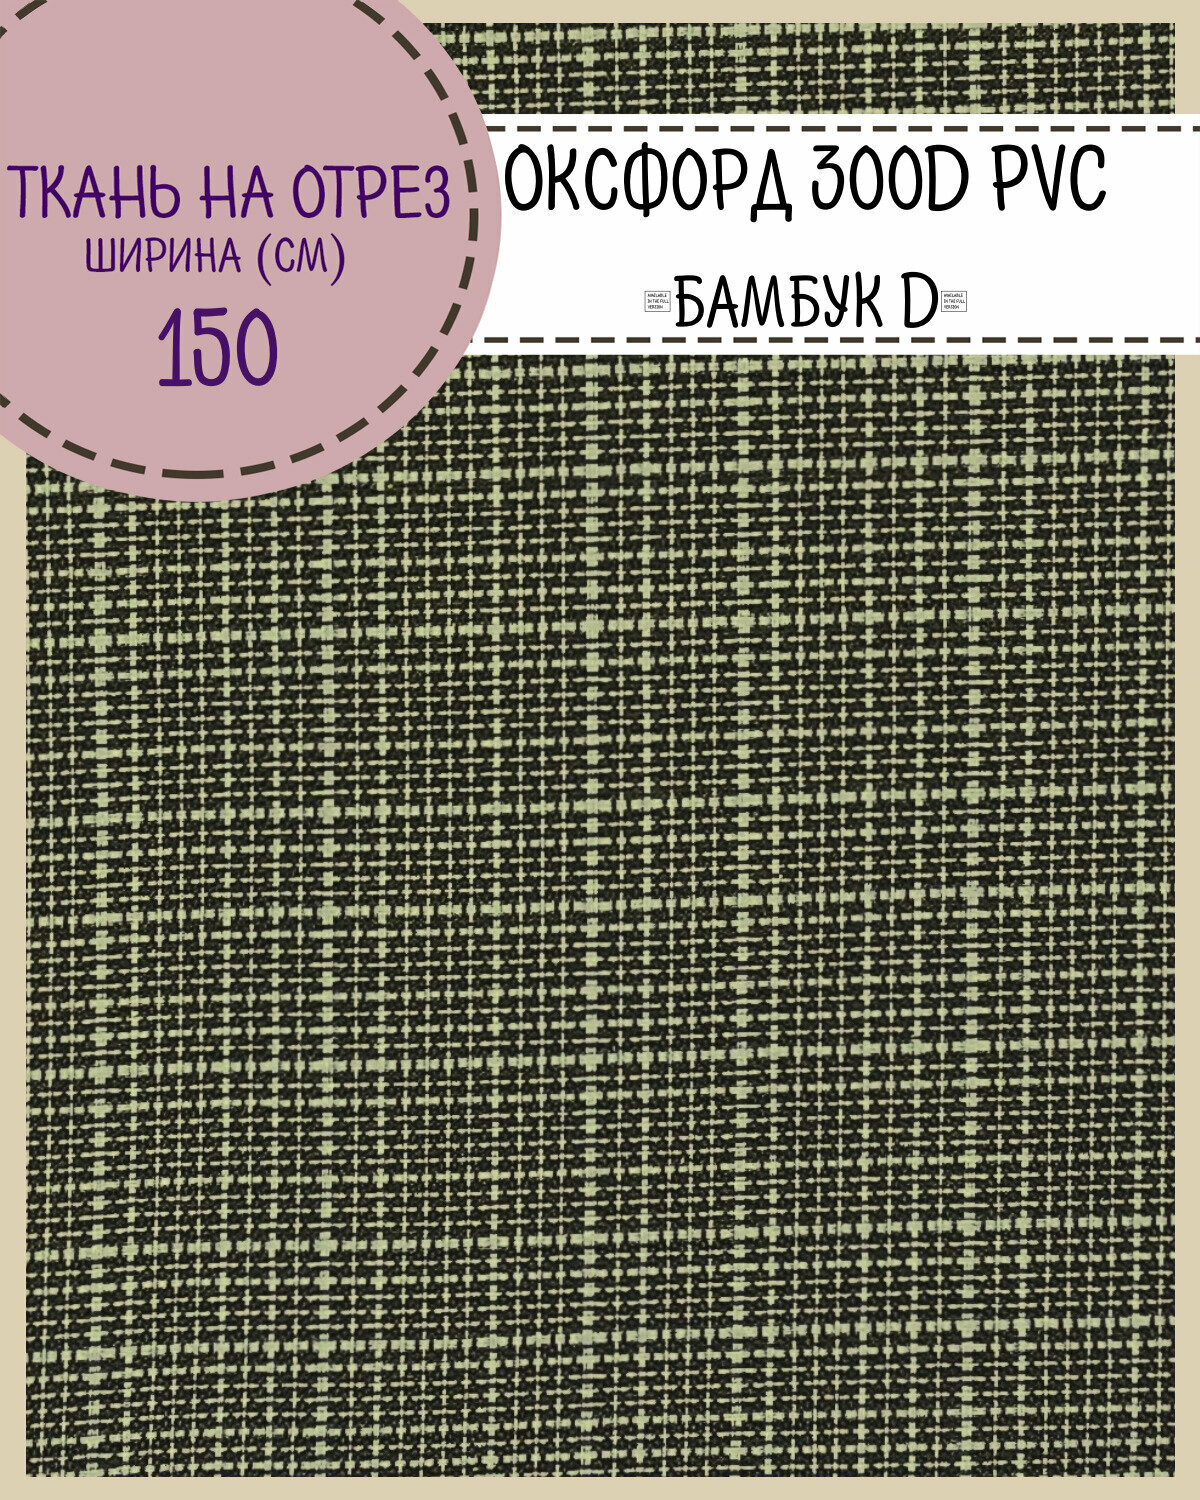 Ткань Оксфорд Oxford 300D PVC "Бамбук D" , пропитка водоотталкивающая, цв. св. серый, ш-150 см, на отрез, цена за пог. метр